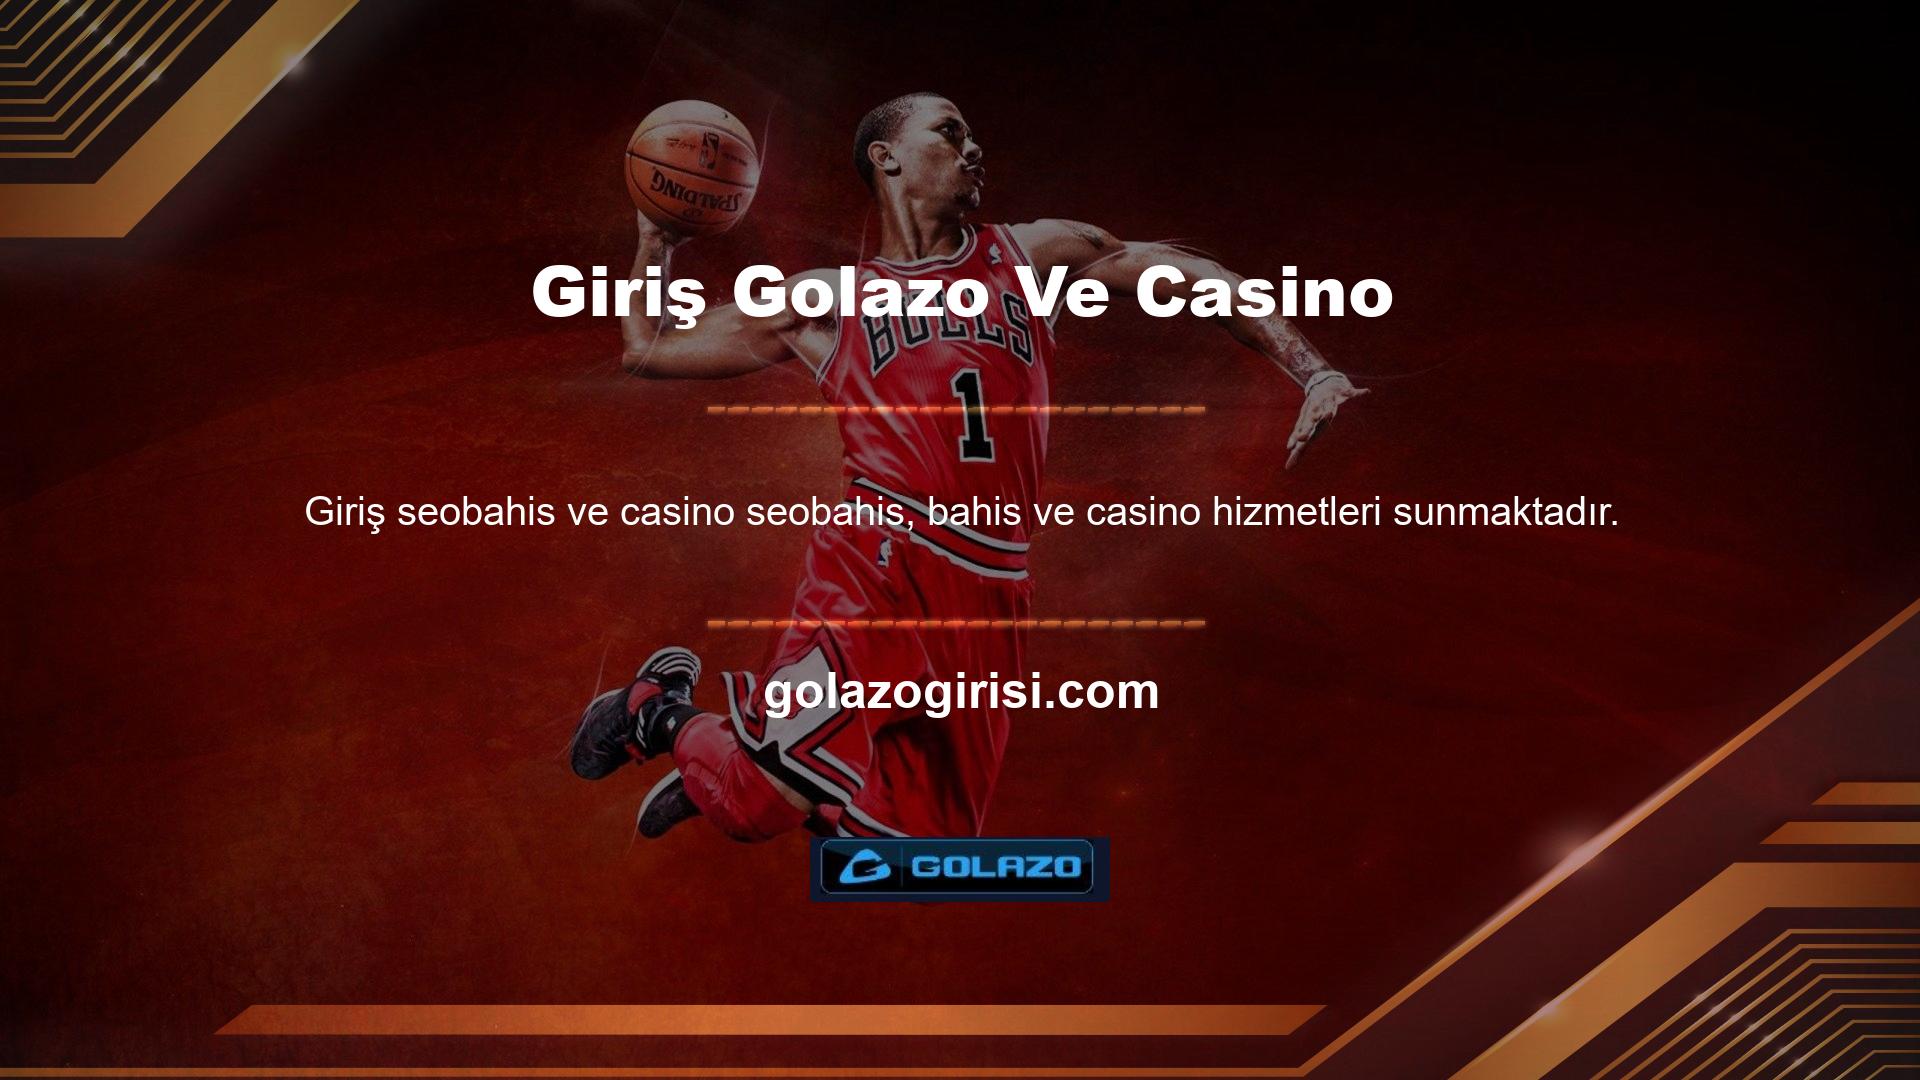 Golazo Casino'nun lobisi, çeşitli popüler ve popüler casino oyunları ve benzersiz içerik sunar